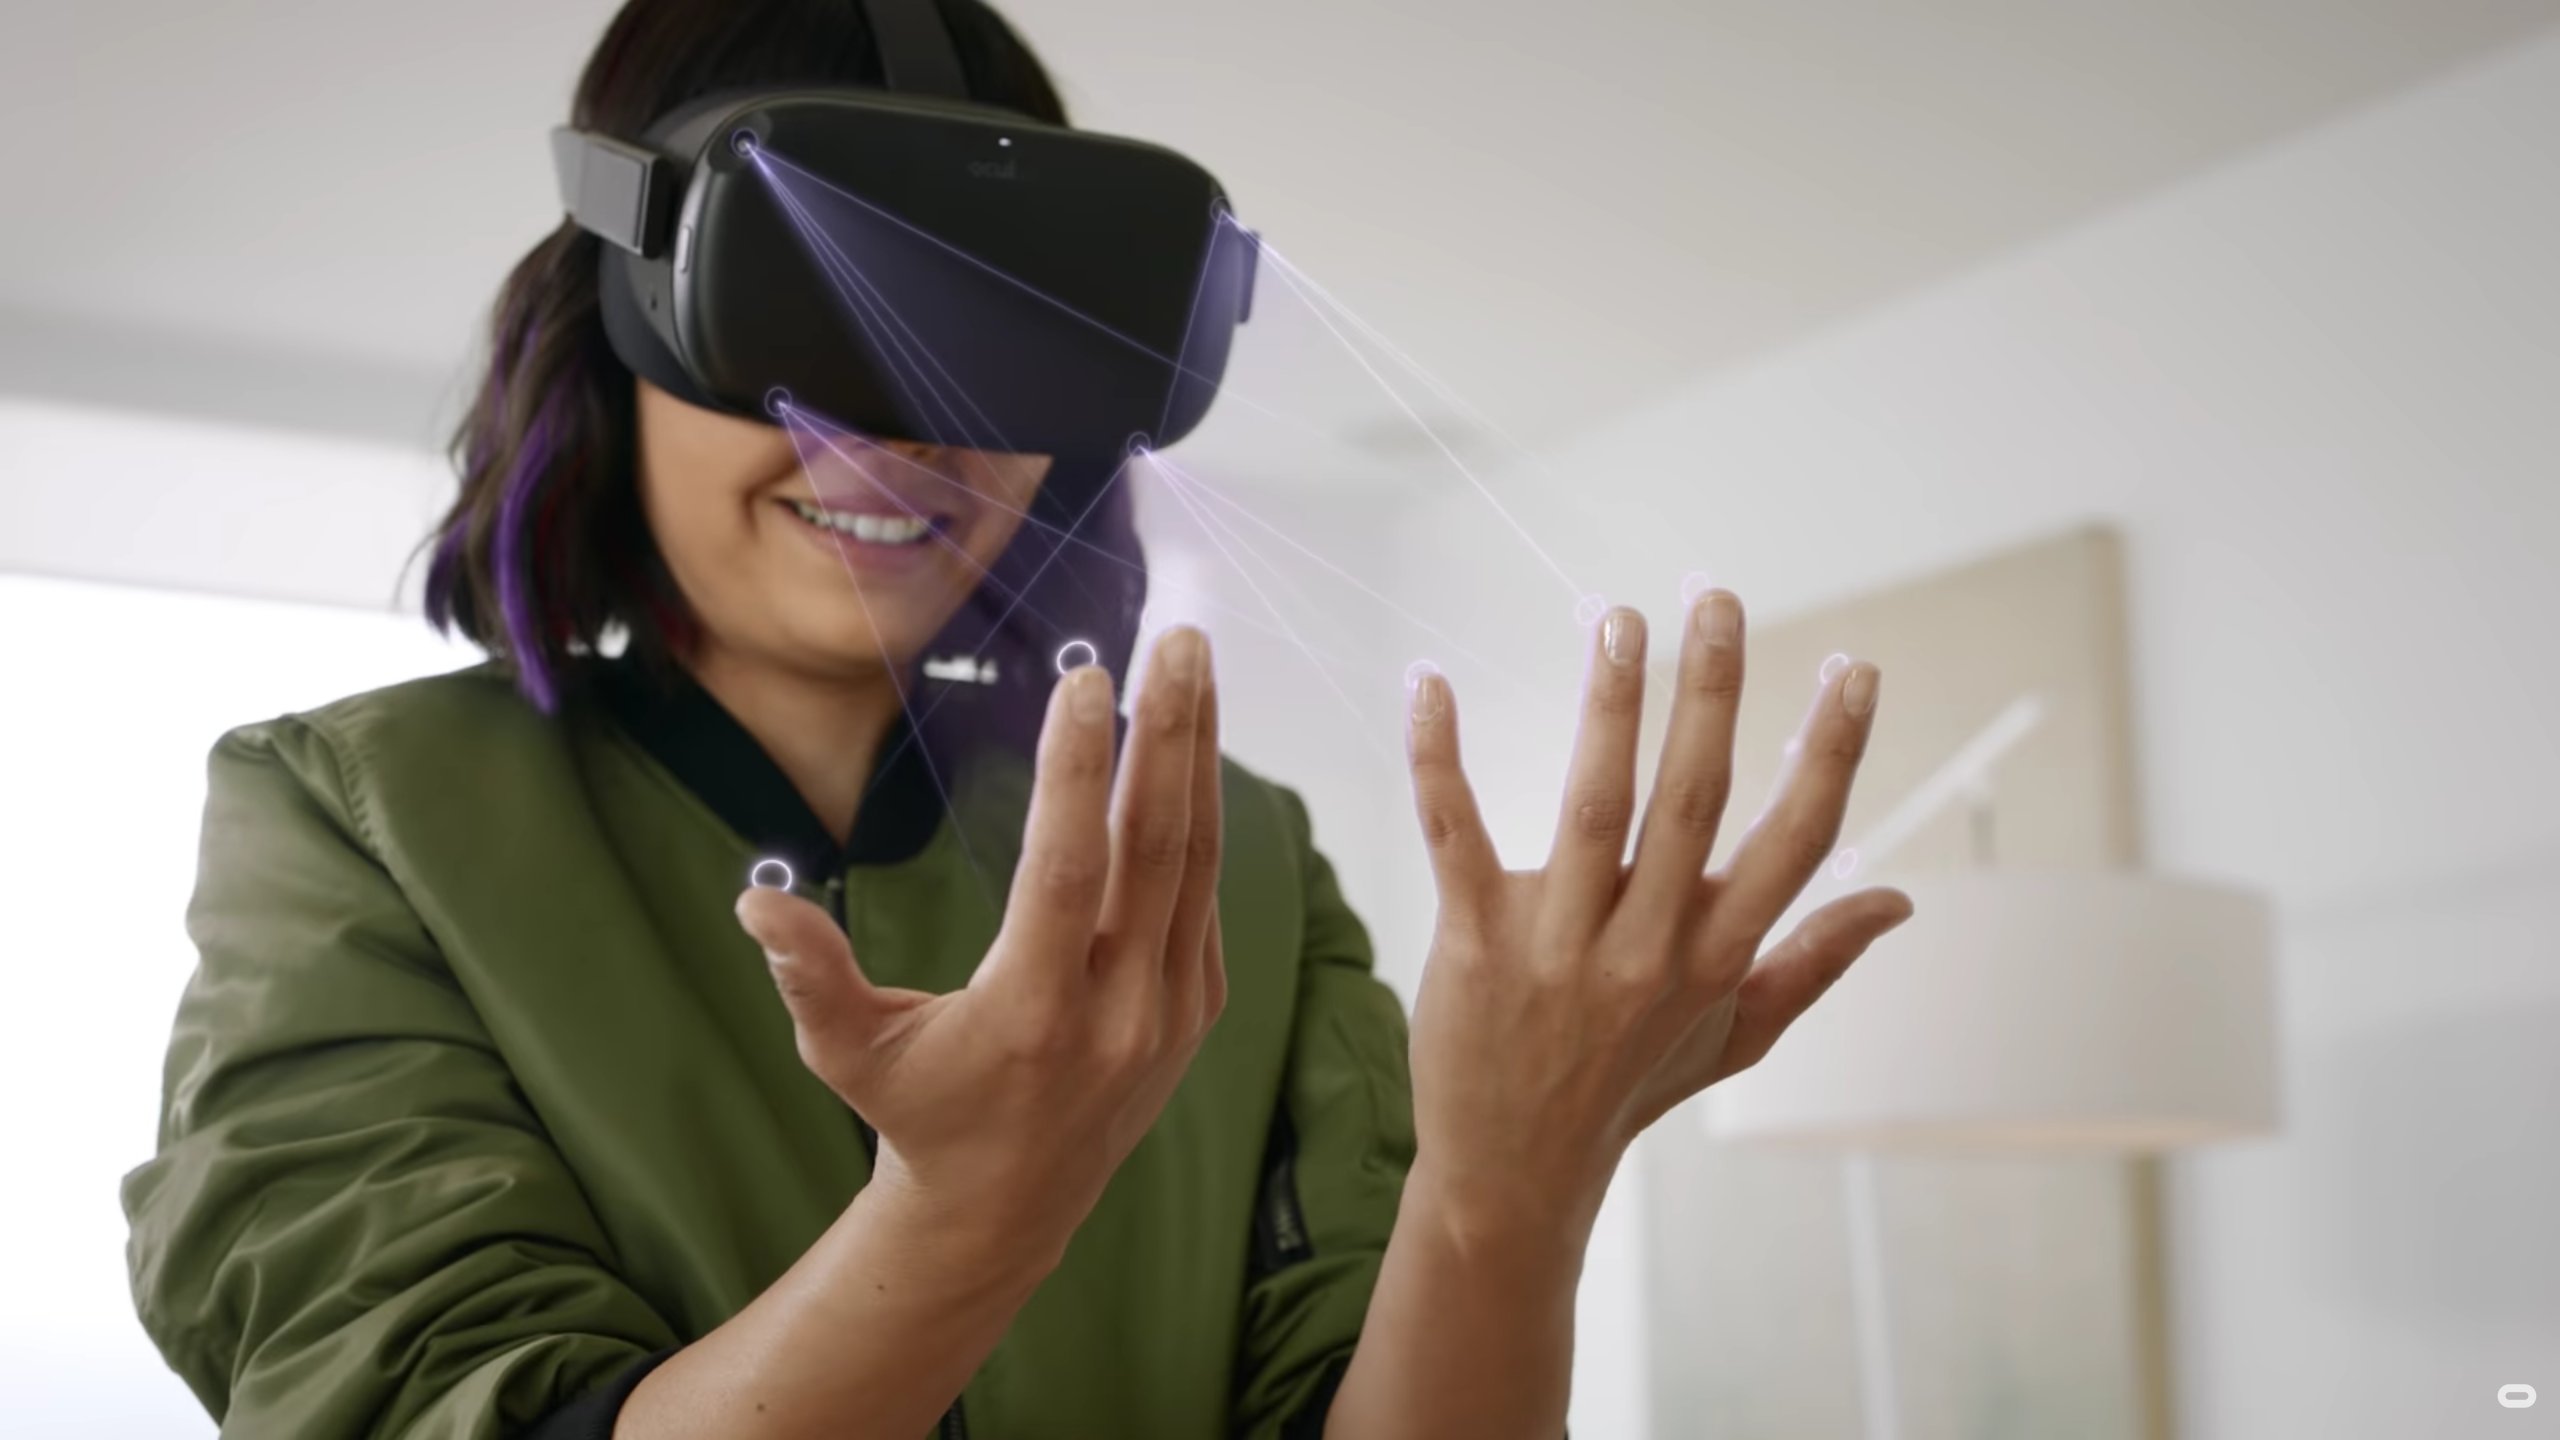 Oculus Connect 6: odłóż kontroler i dotknij wirtualnych przedmiotów